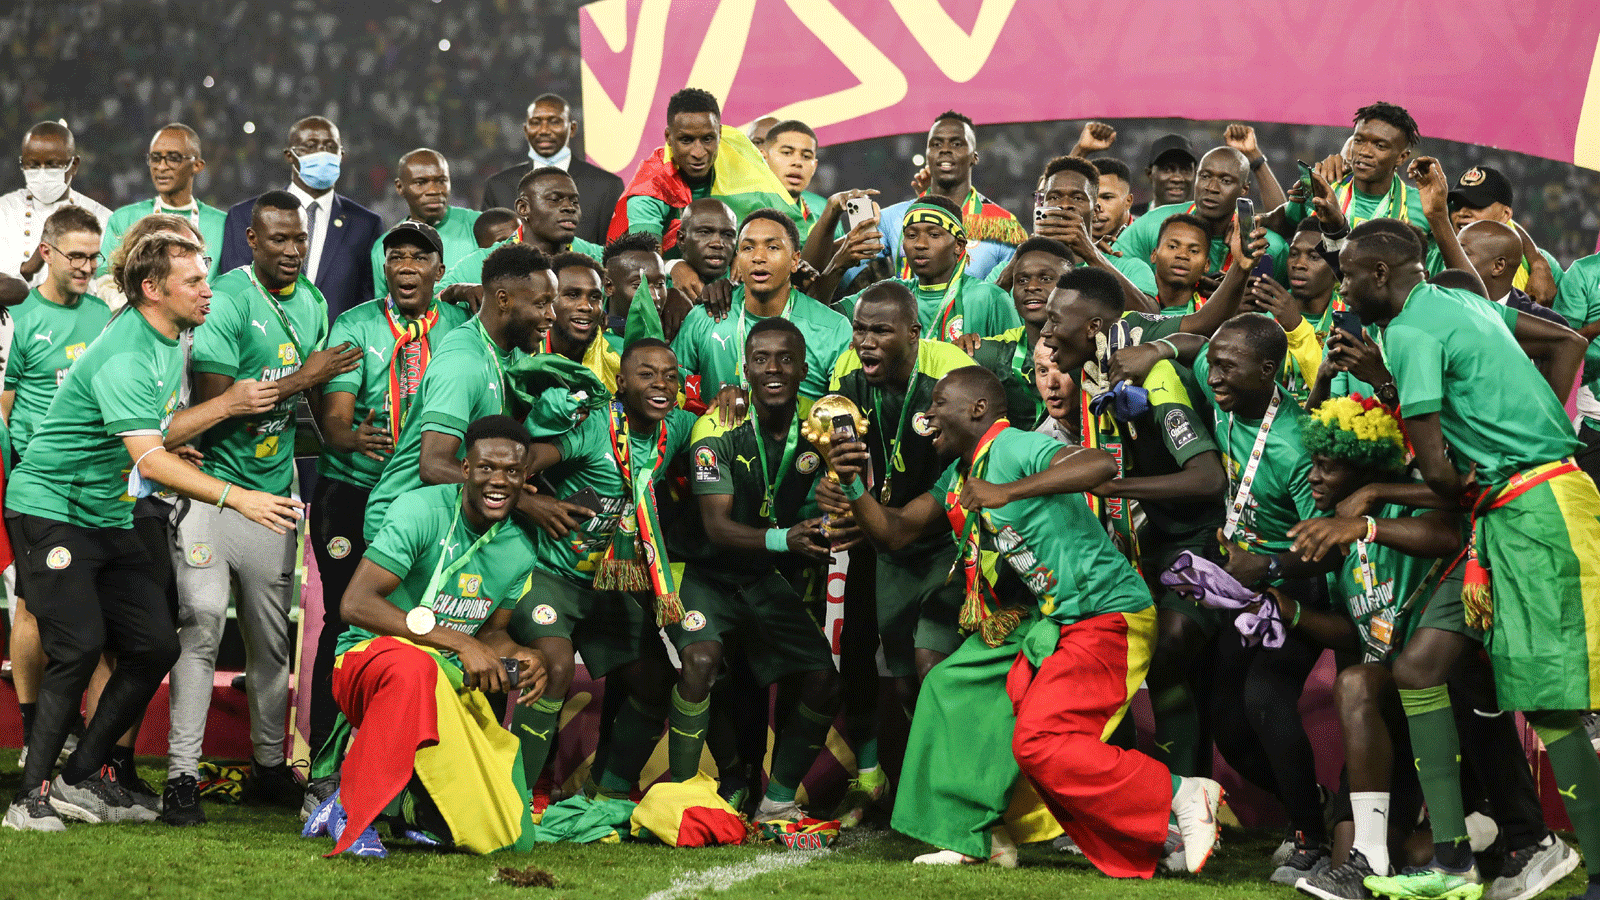 لاعبو منتخب السنغال يستلمون الكأس وحتفلون بعد فوزهم على مصر بركلات الترجيح 4-2 في نهائي كأس أمم إفريقيا في الكاميرون في 6 شباط/فبراير 2022 (صورة من صفحة الاتحاد الافريقي لكرة القدم على تويتر)